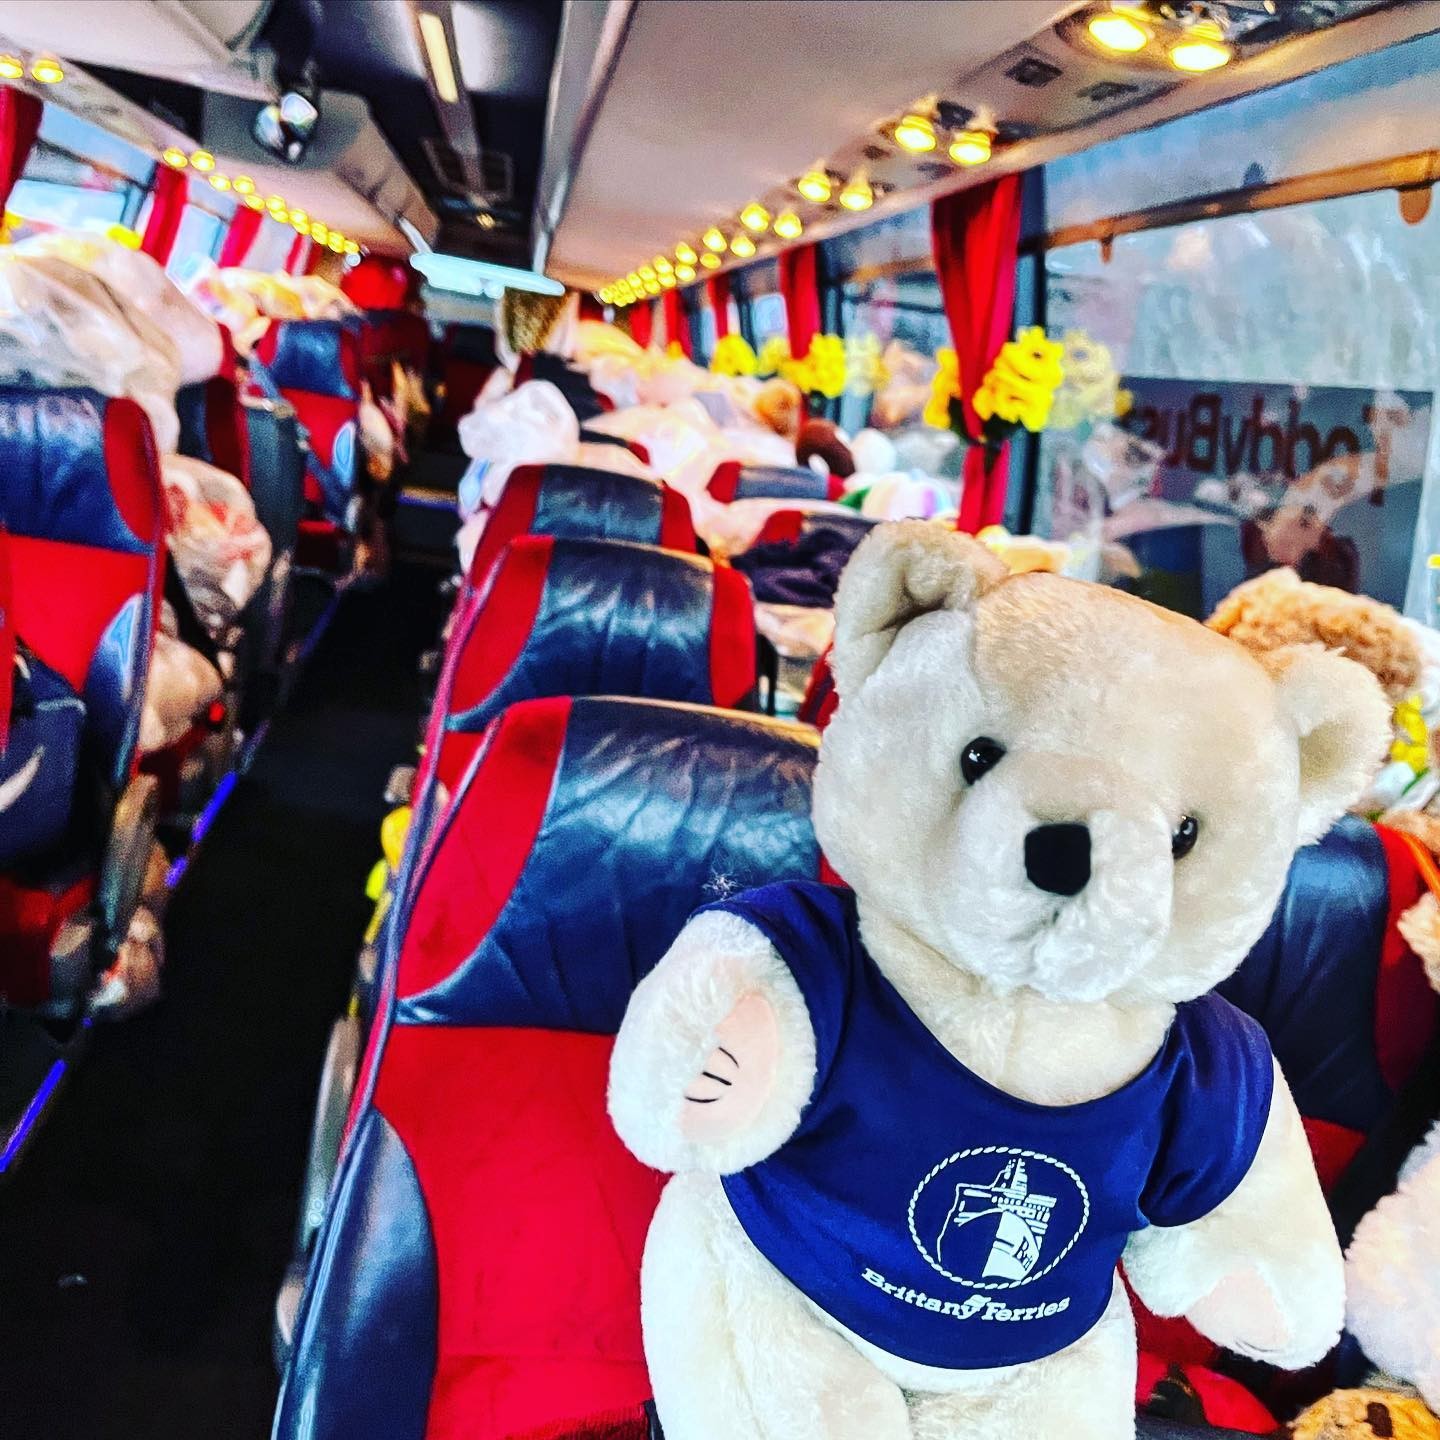 Grupo de ingleses criam ônibus de ursinhos e distribuem para crianças ucranianas (Foto: Reprodução / Instagram)